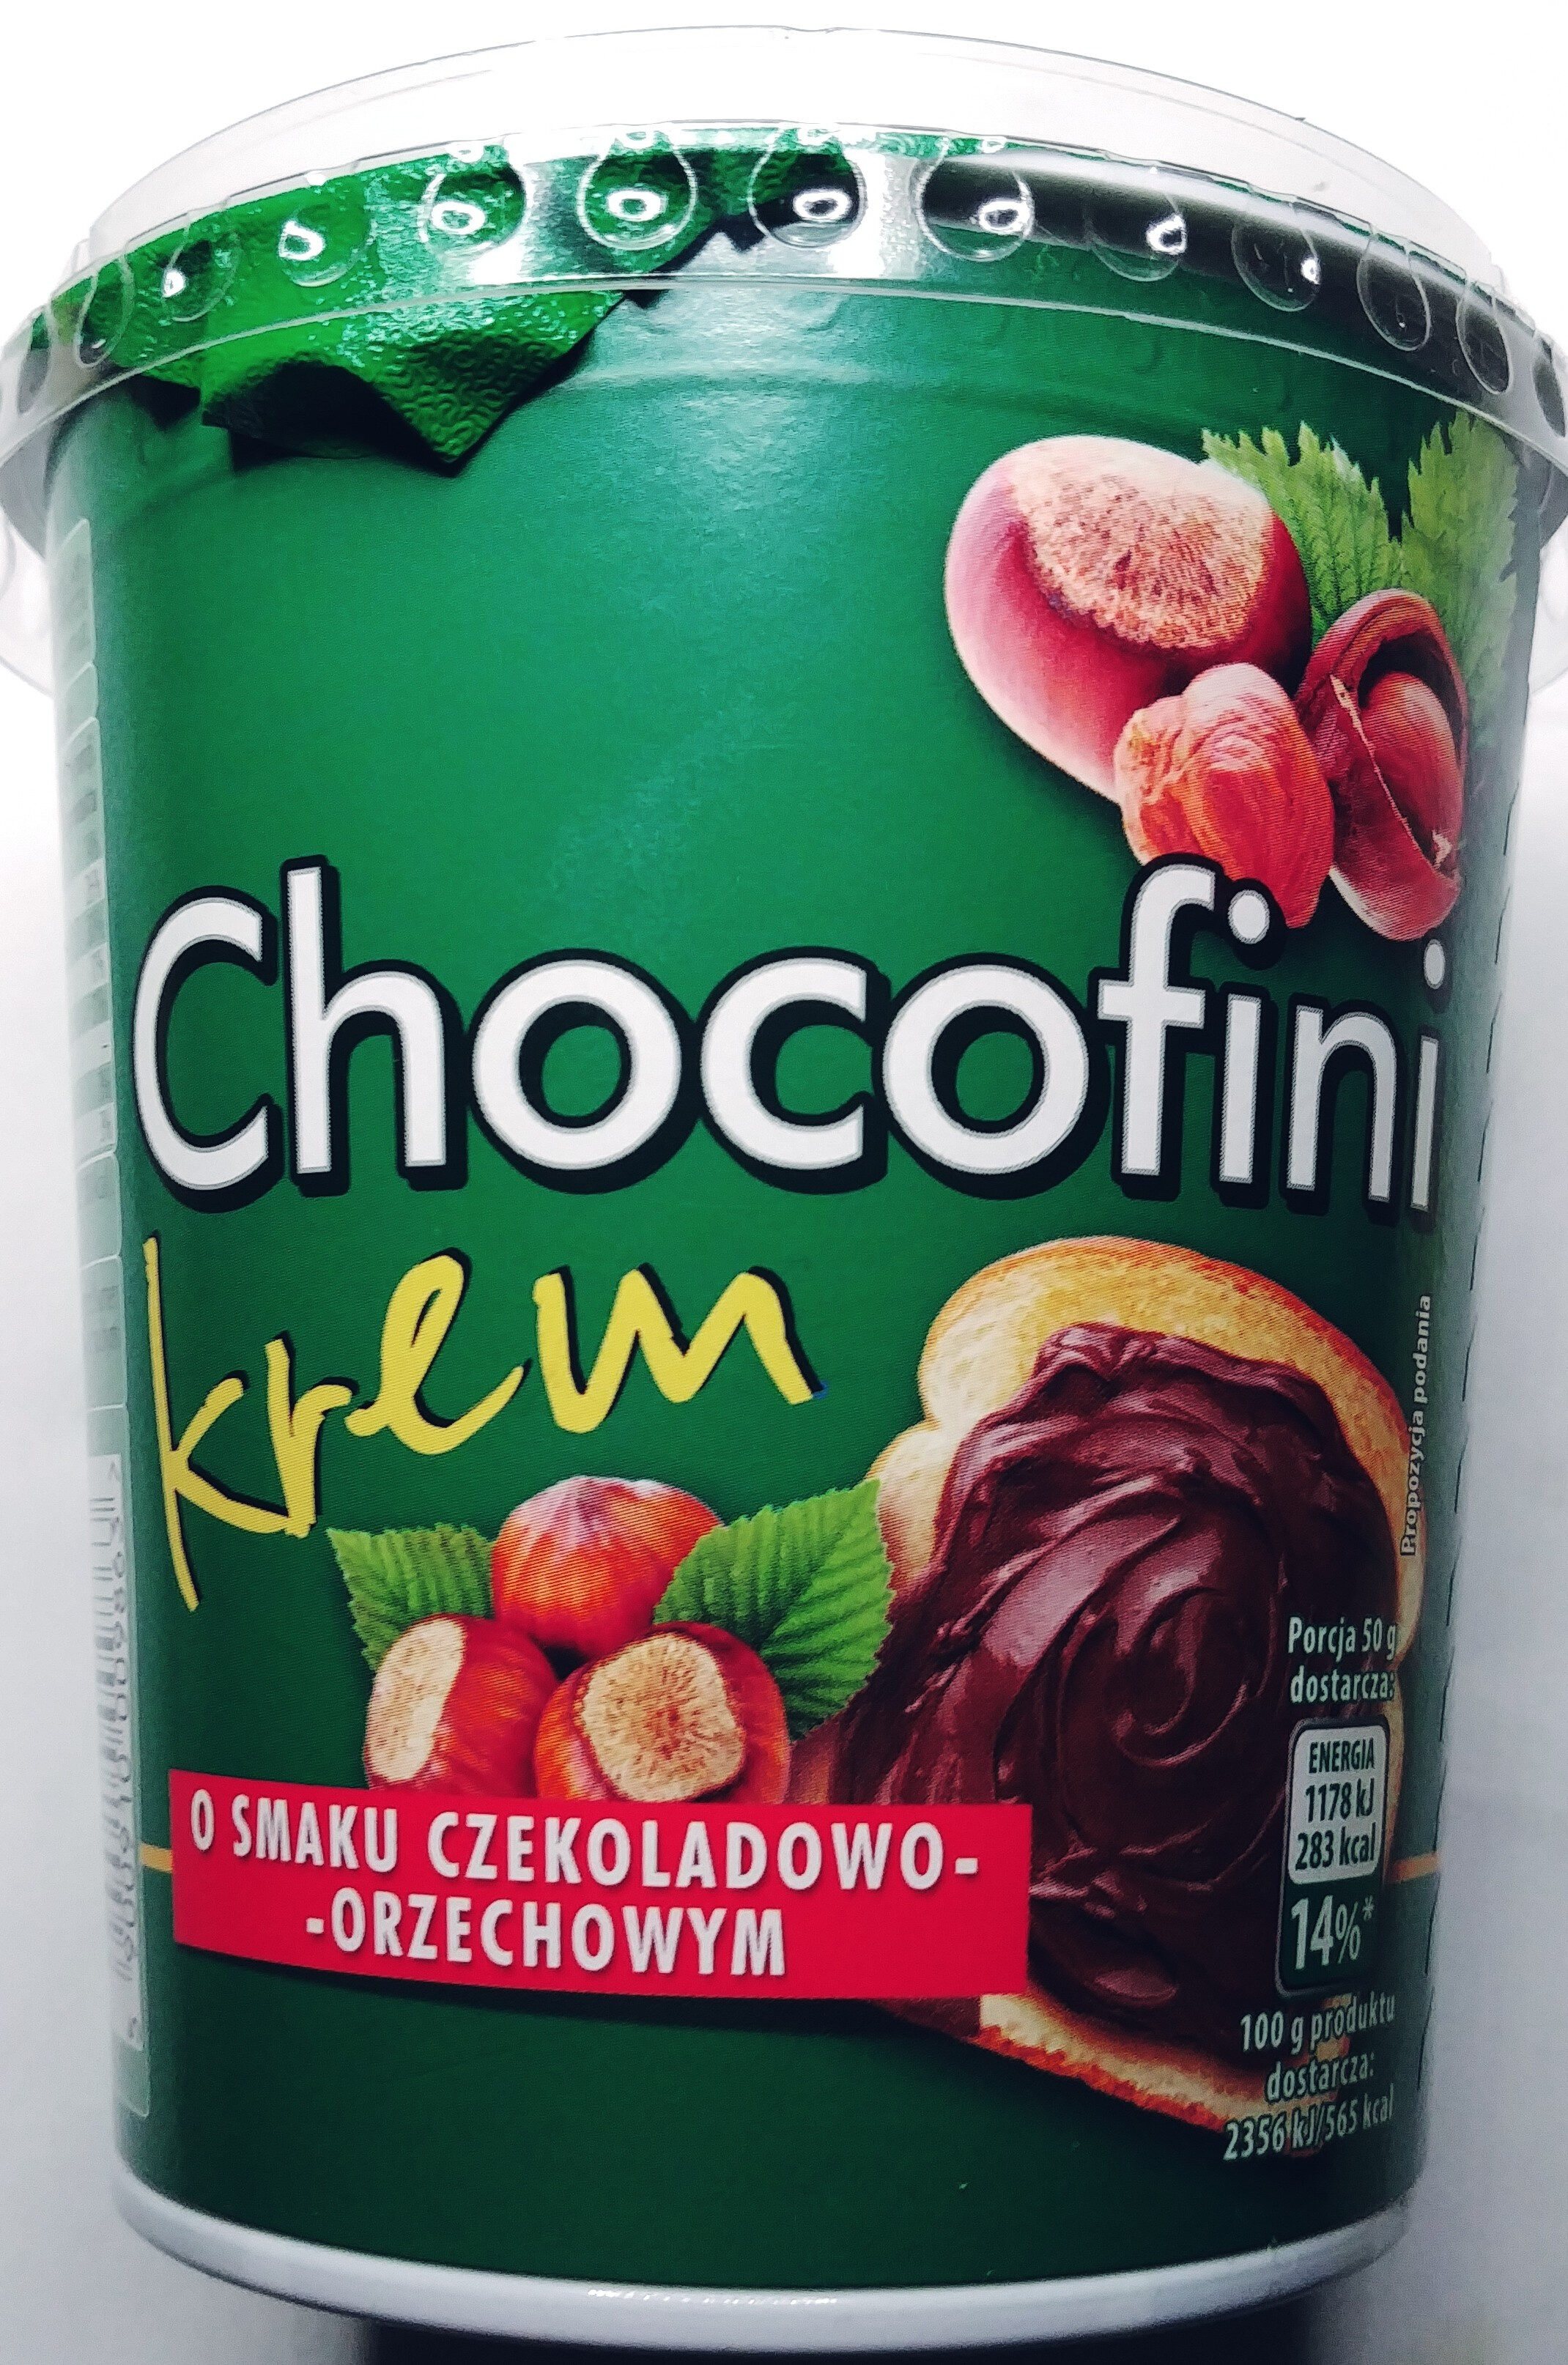 Krem o smaku czekoladowo-orzechowym - Product - pl